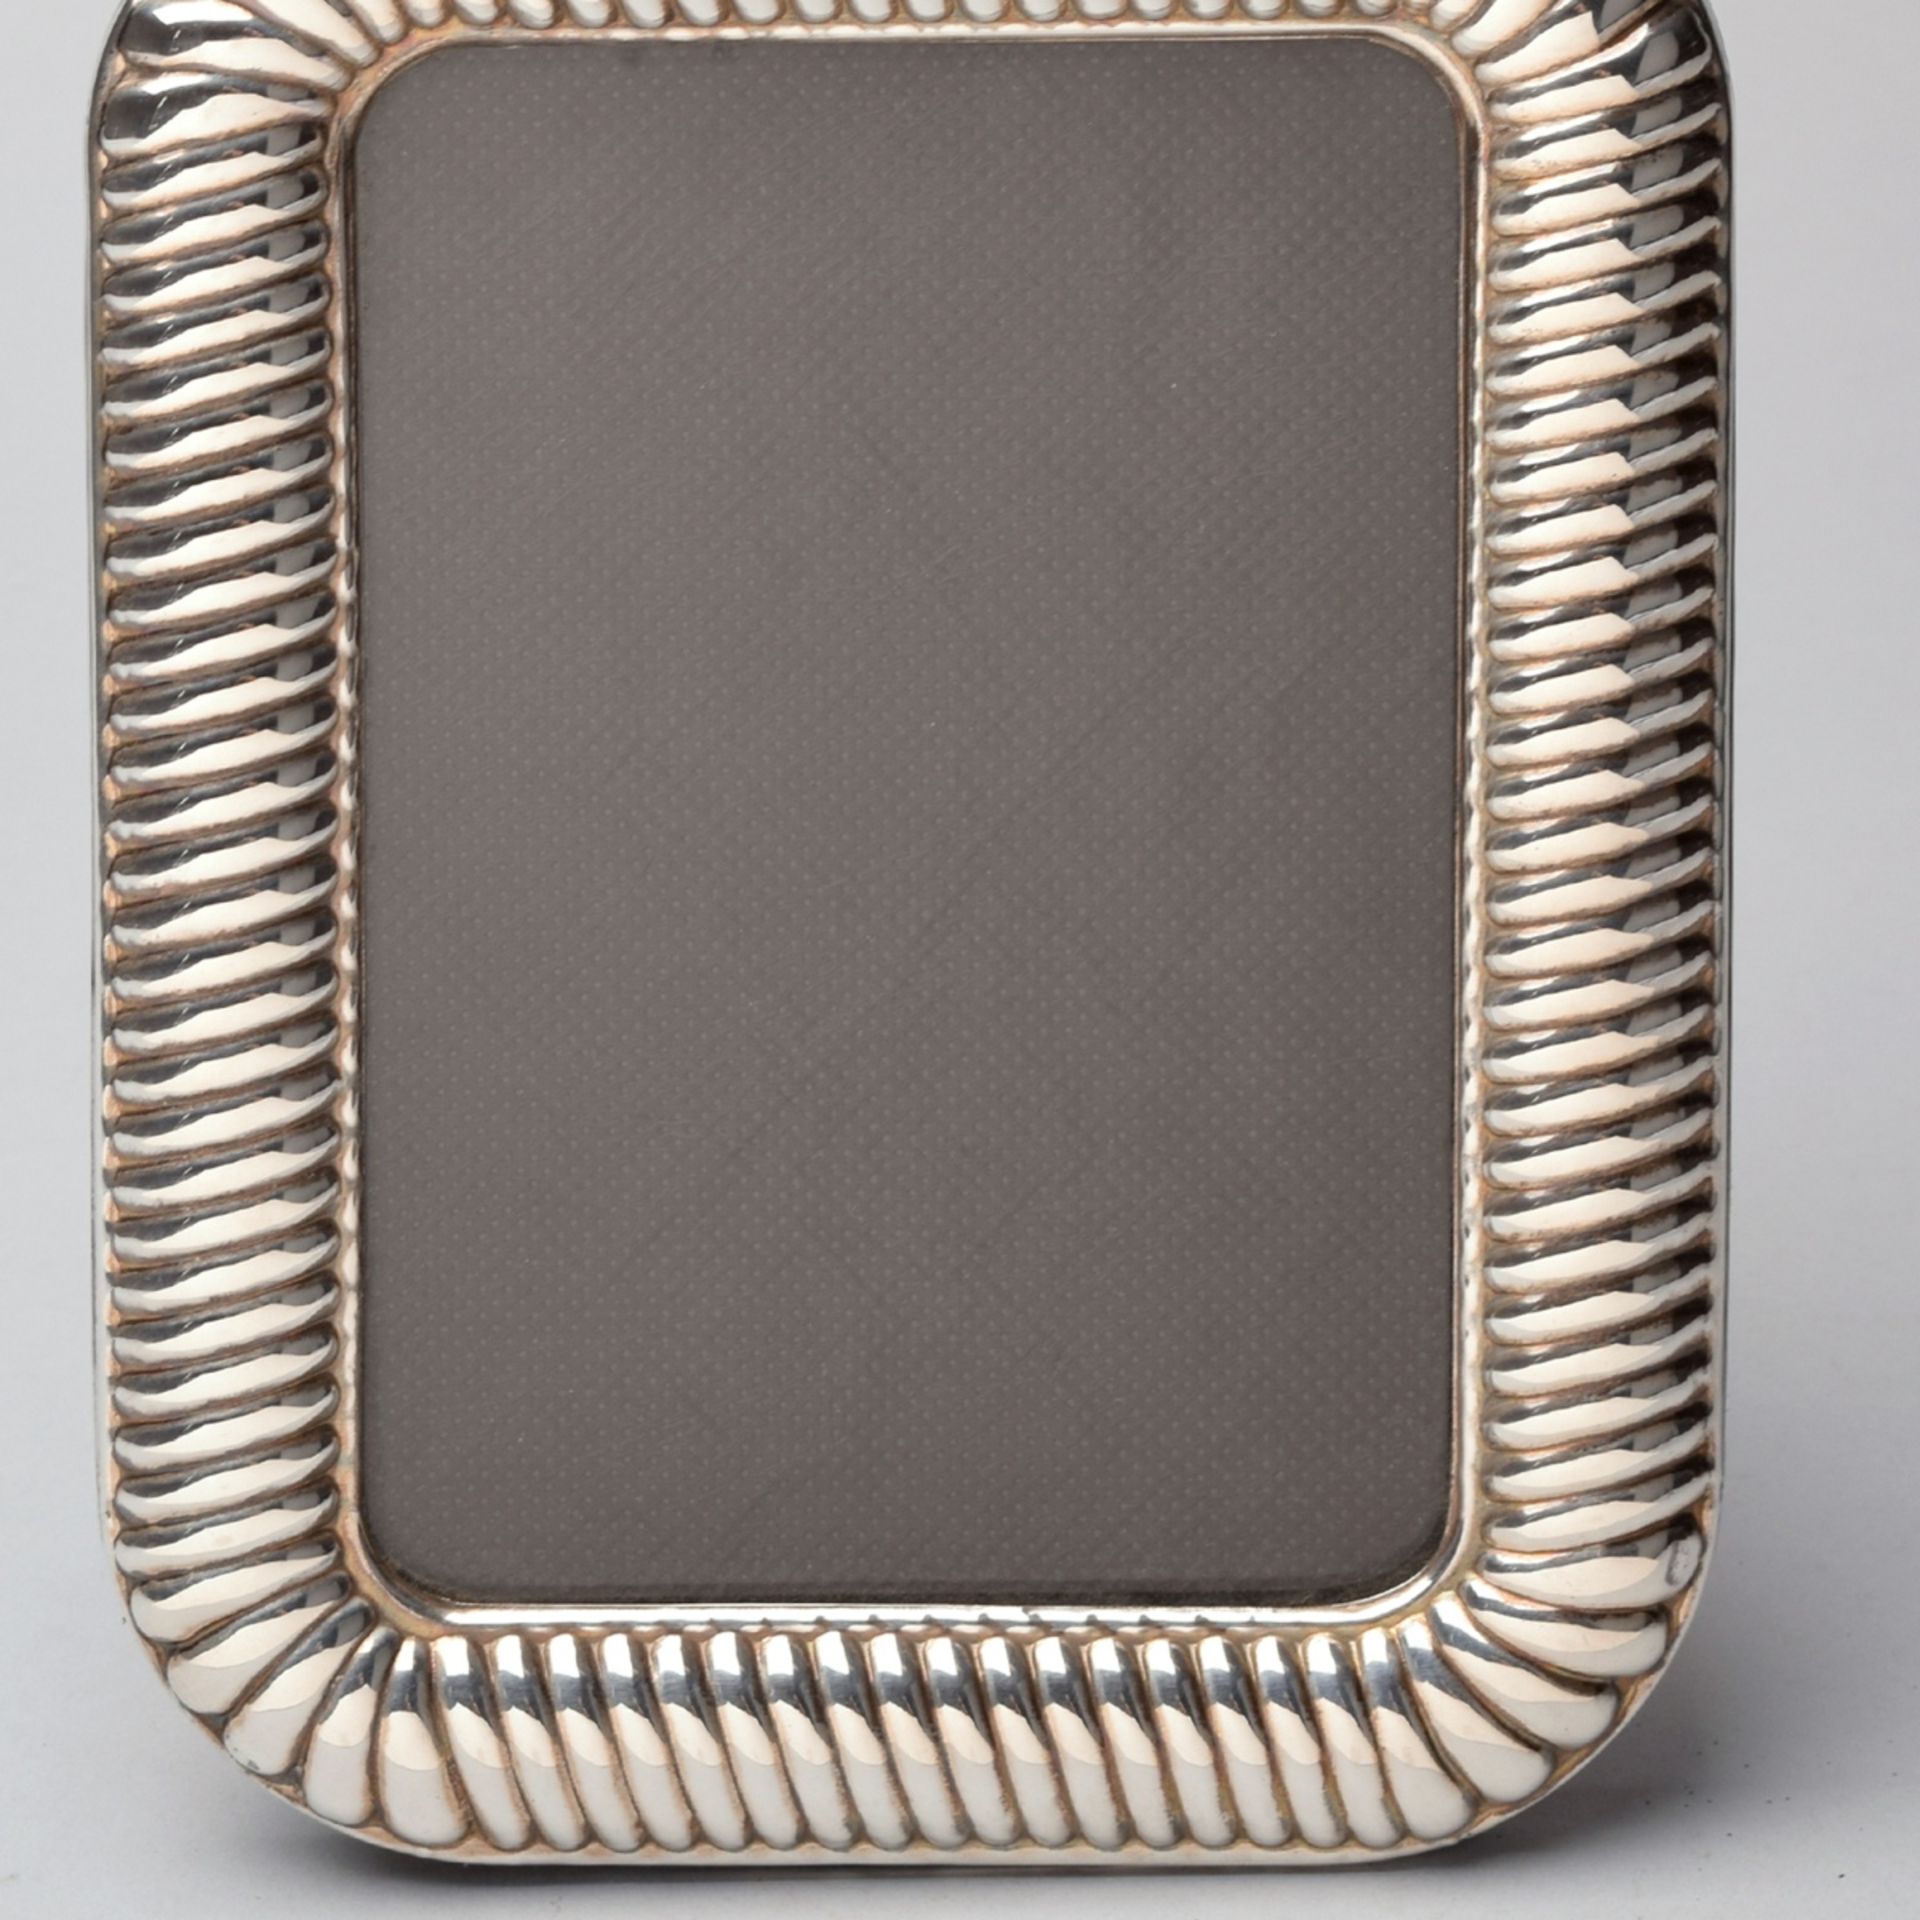 Standbilderrahmen Silber 925, gemarkt "Pele", rechteckige Form mit abgerundeten Ecken, leicht